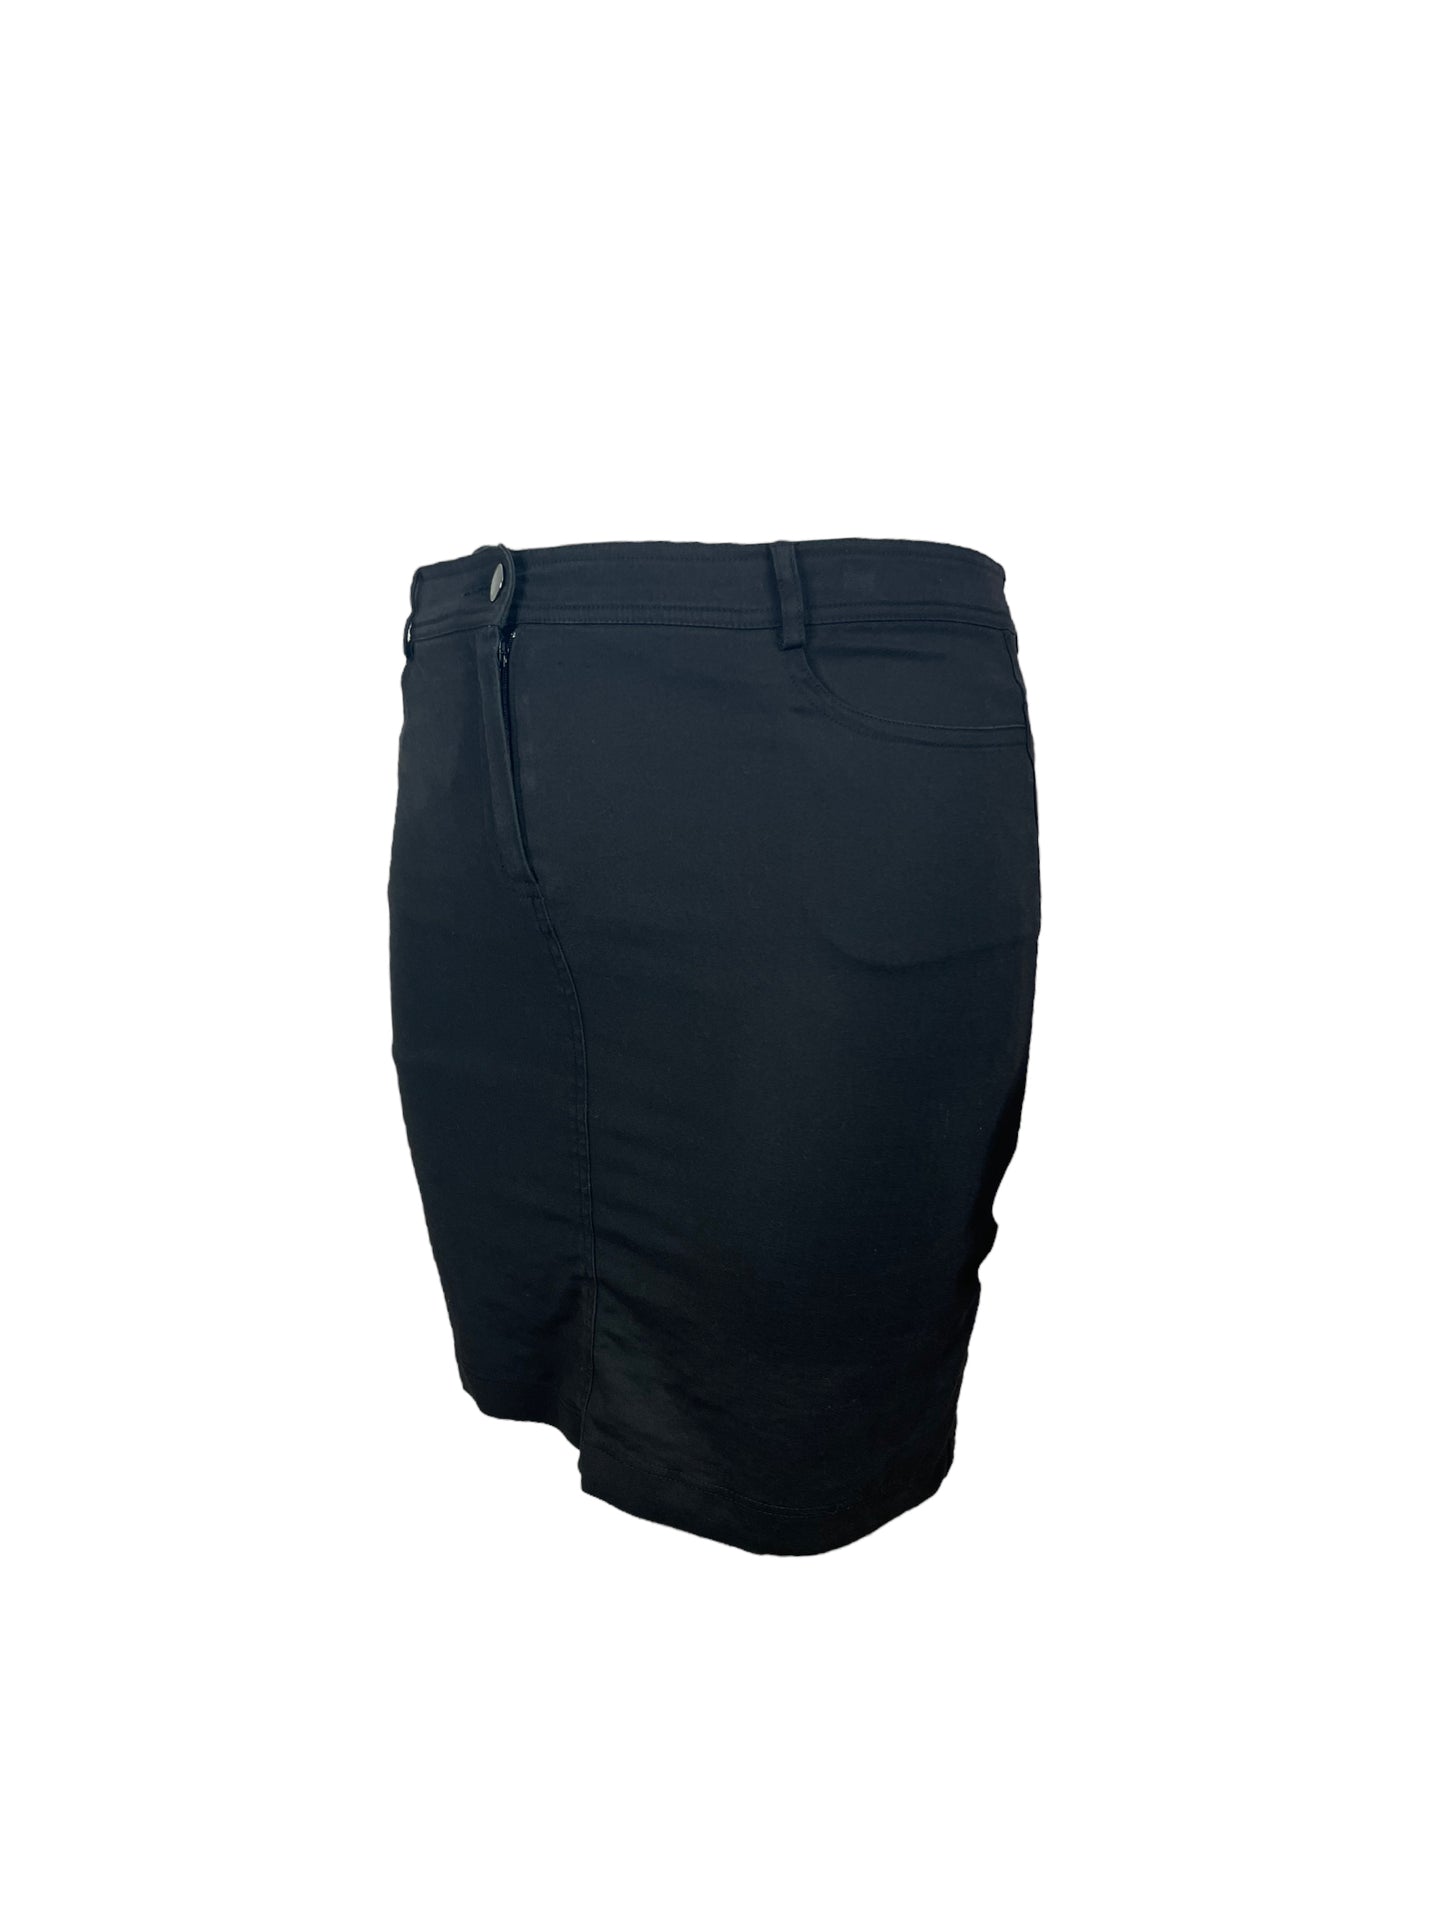 “Simons” Black Fitted Skirt